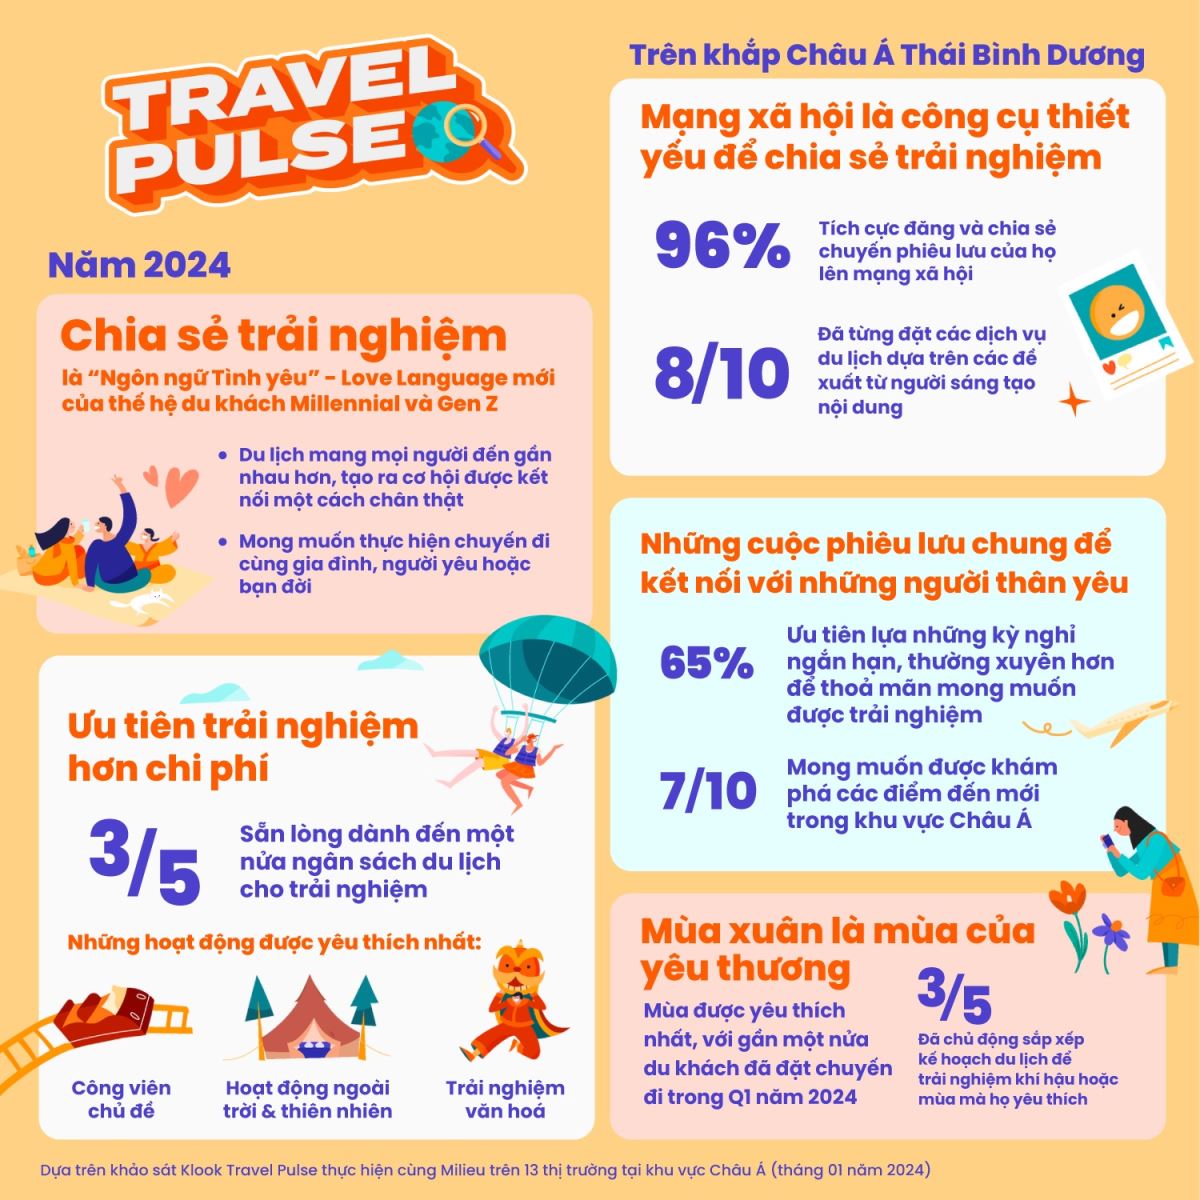 MXH tác động đến xu hướng du lịch của giới trẻ.